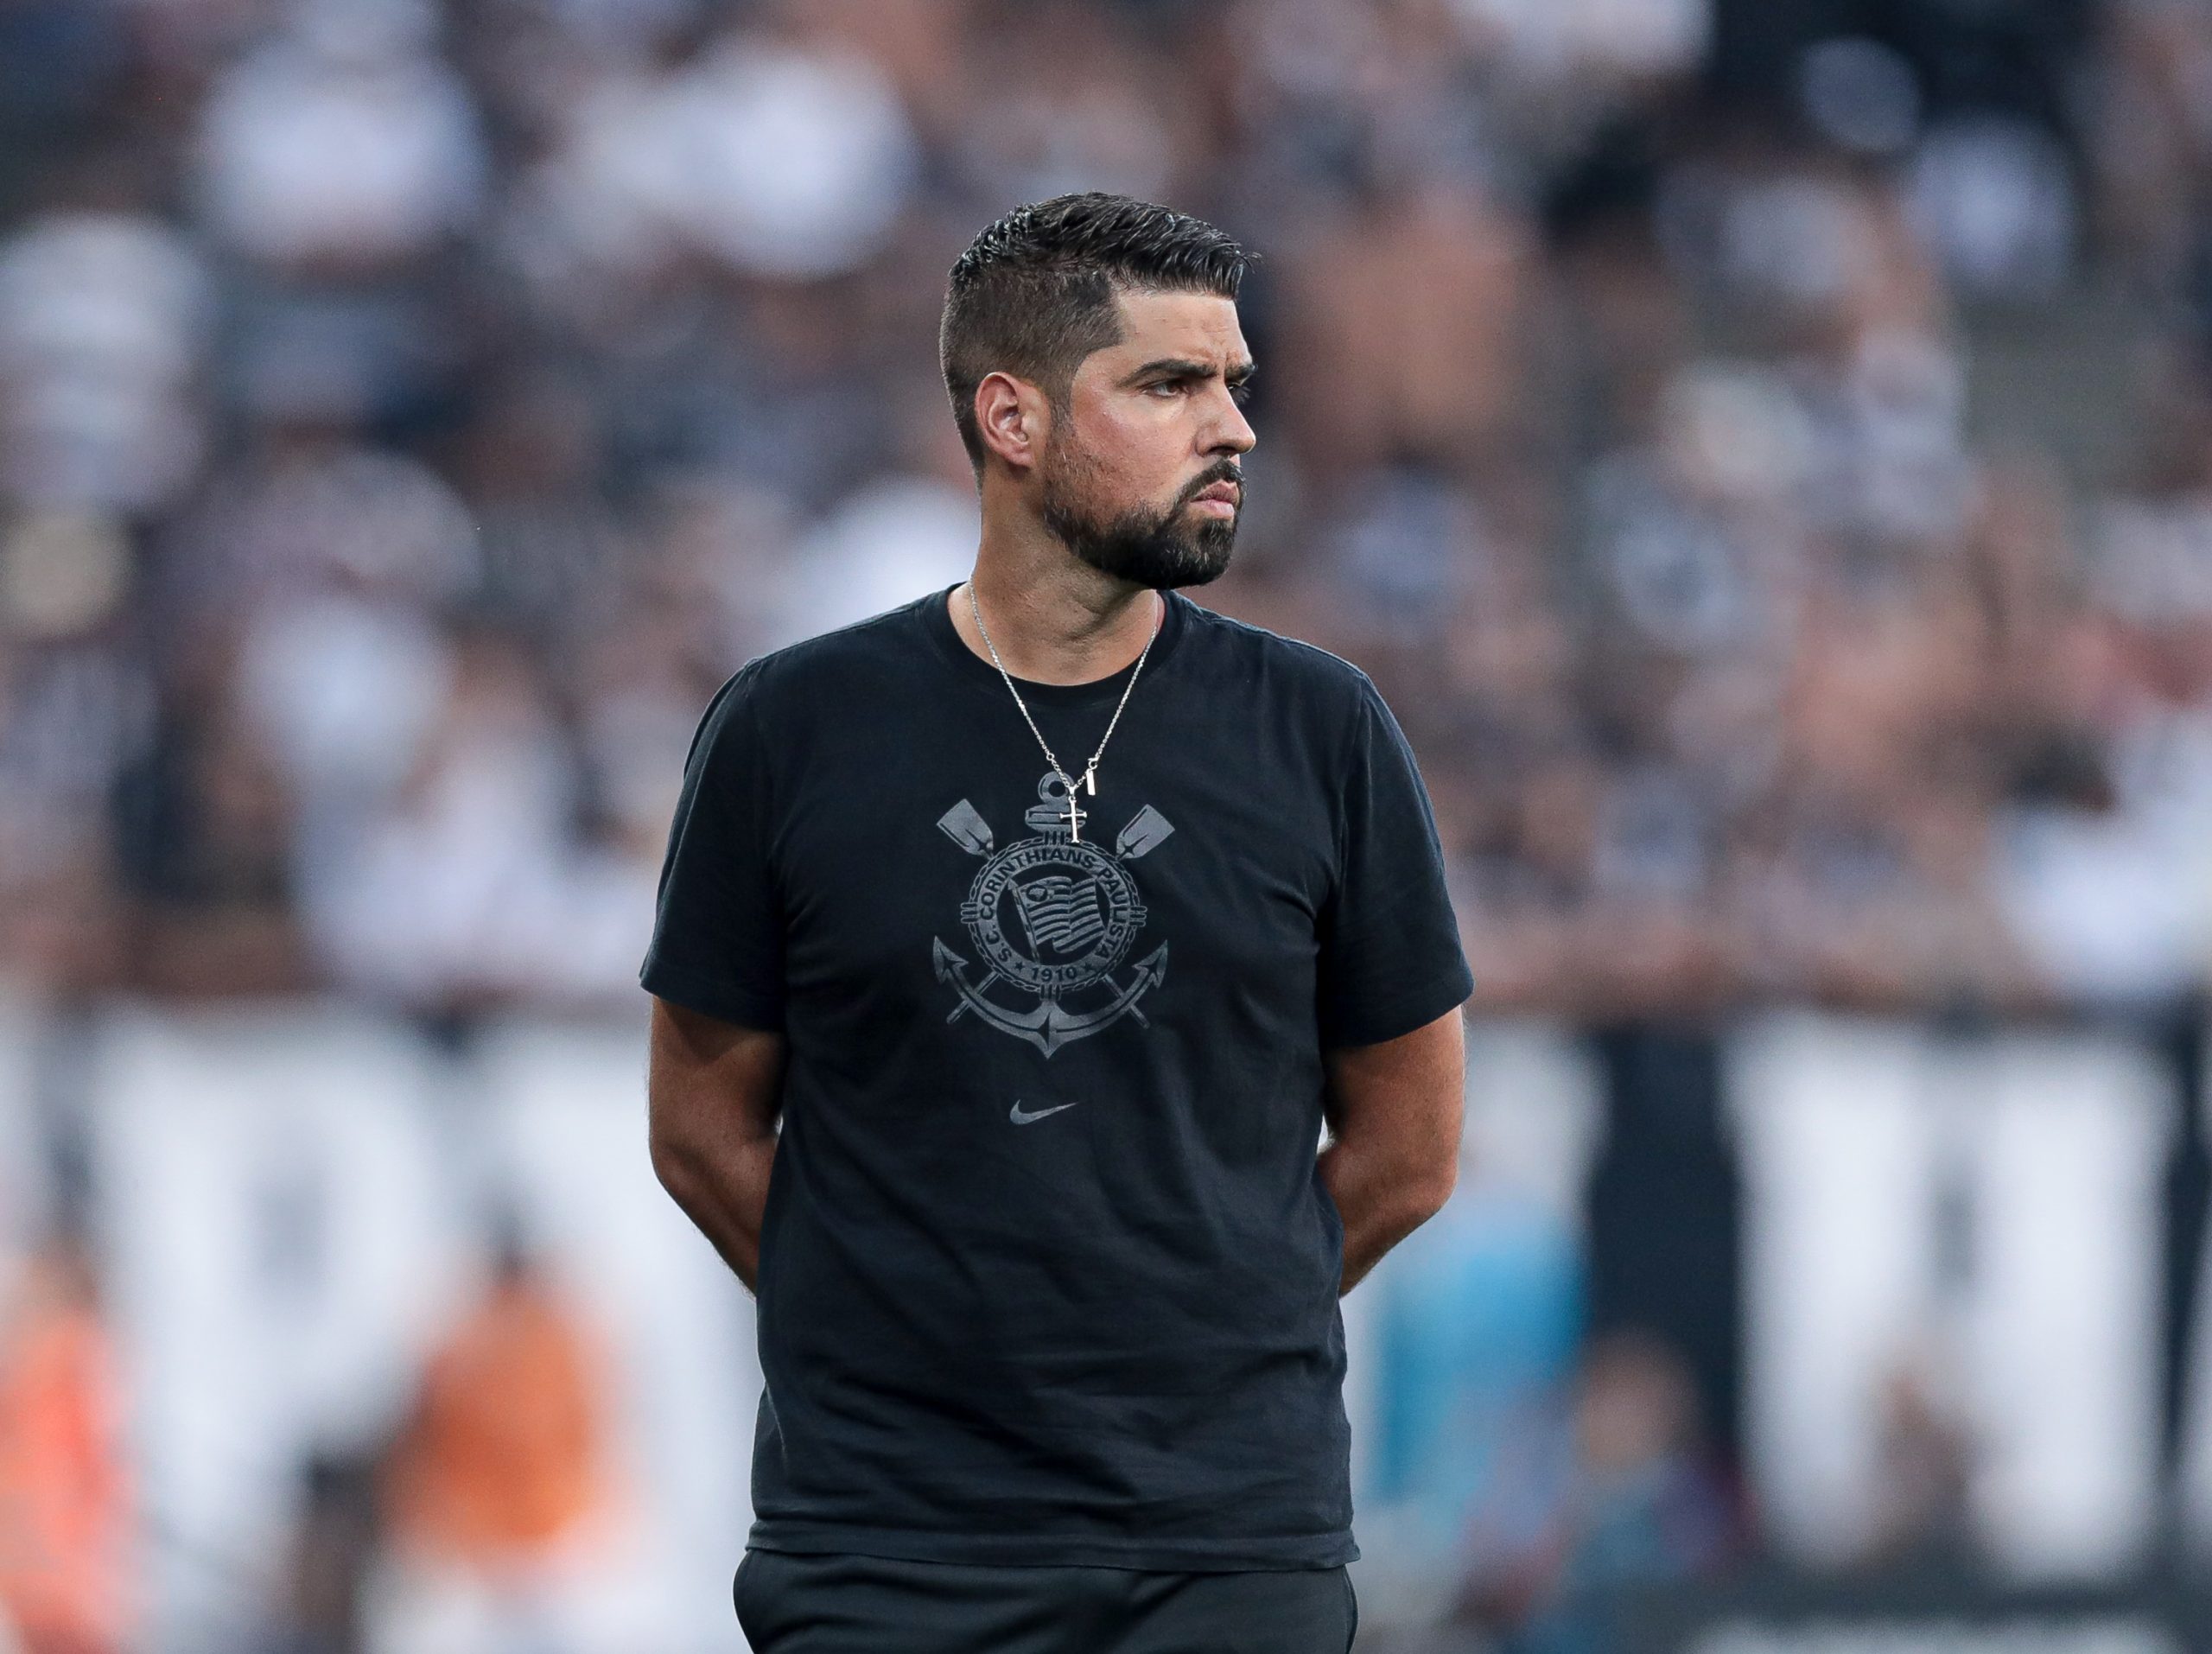 António Oliveira comenta sobre fase do Corinthians após vitória: 'Mudanças geral caos até a estabilidade'. (Foto: Rodrigo Coca/Agência Corinthians)